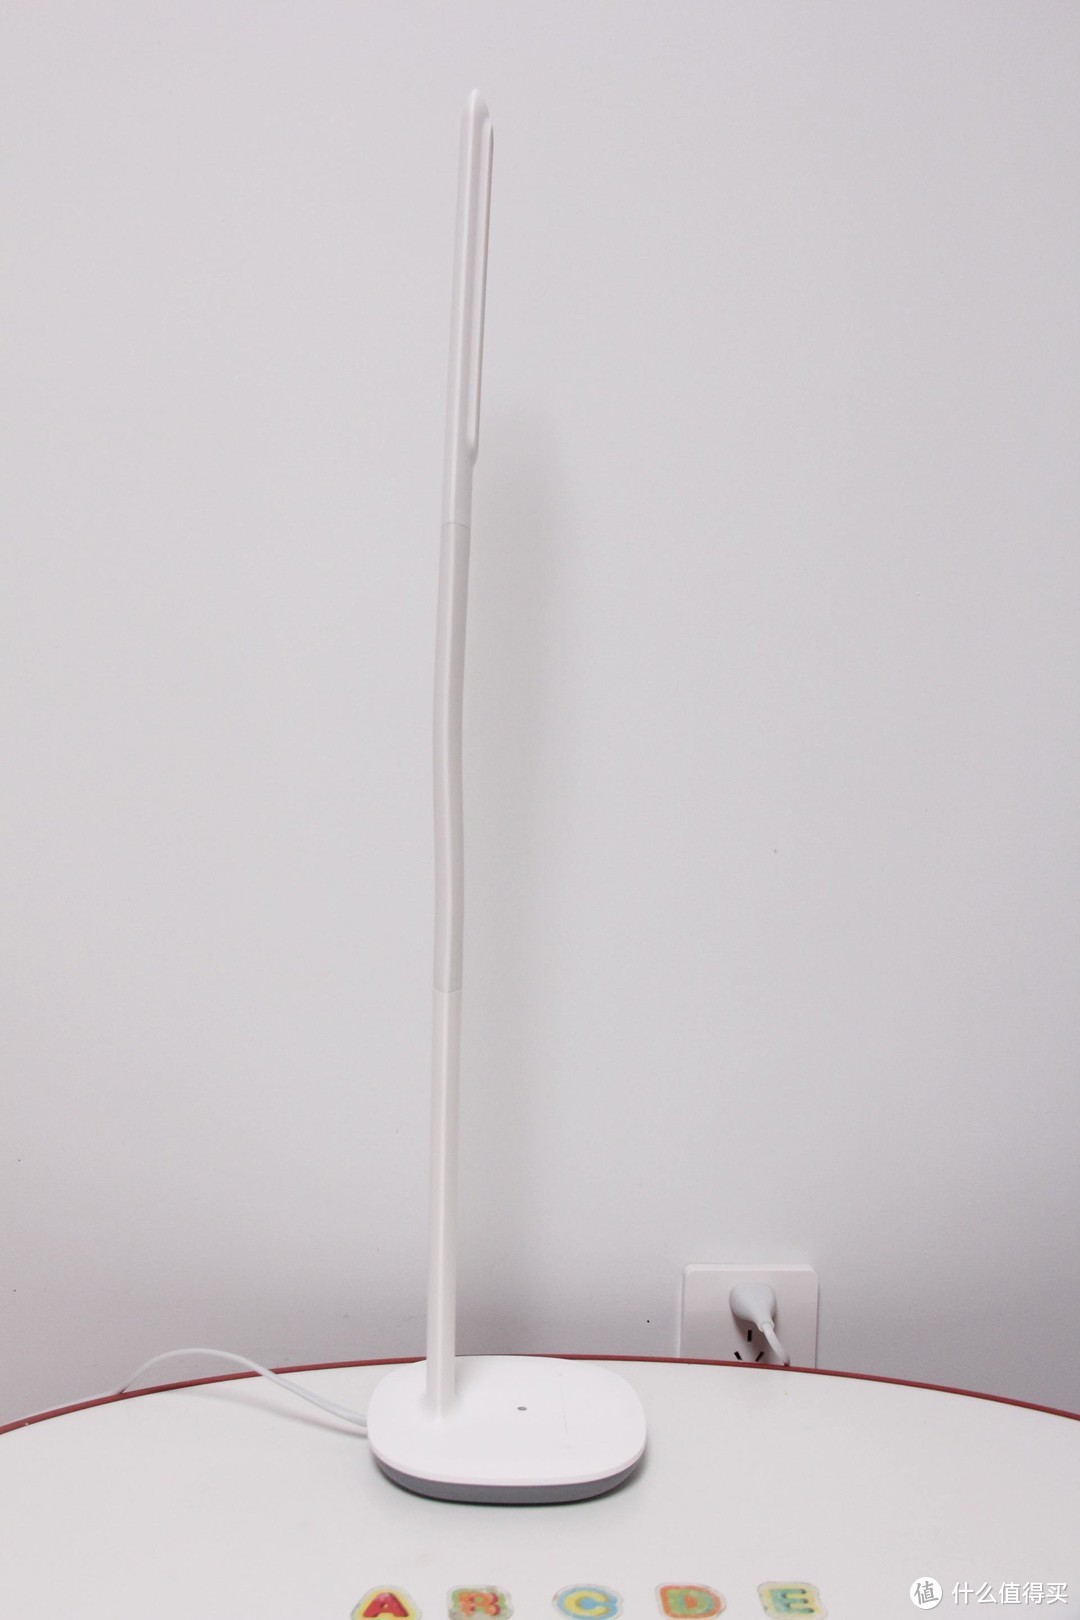 功能强、设计美、性价比高——米家飞利浦台灯3